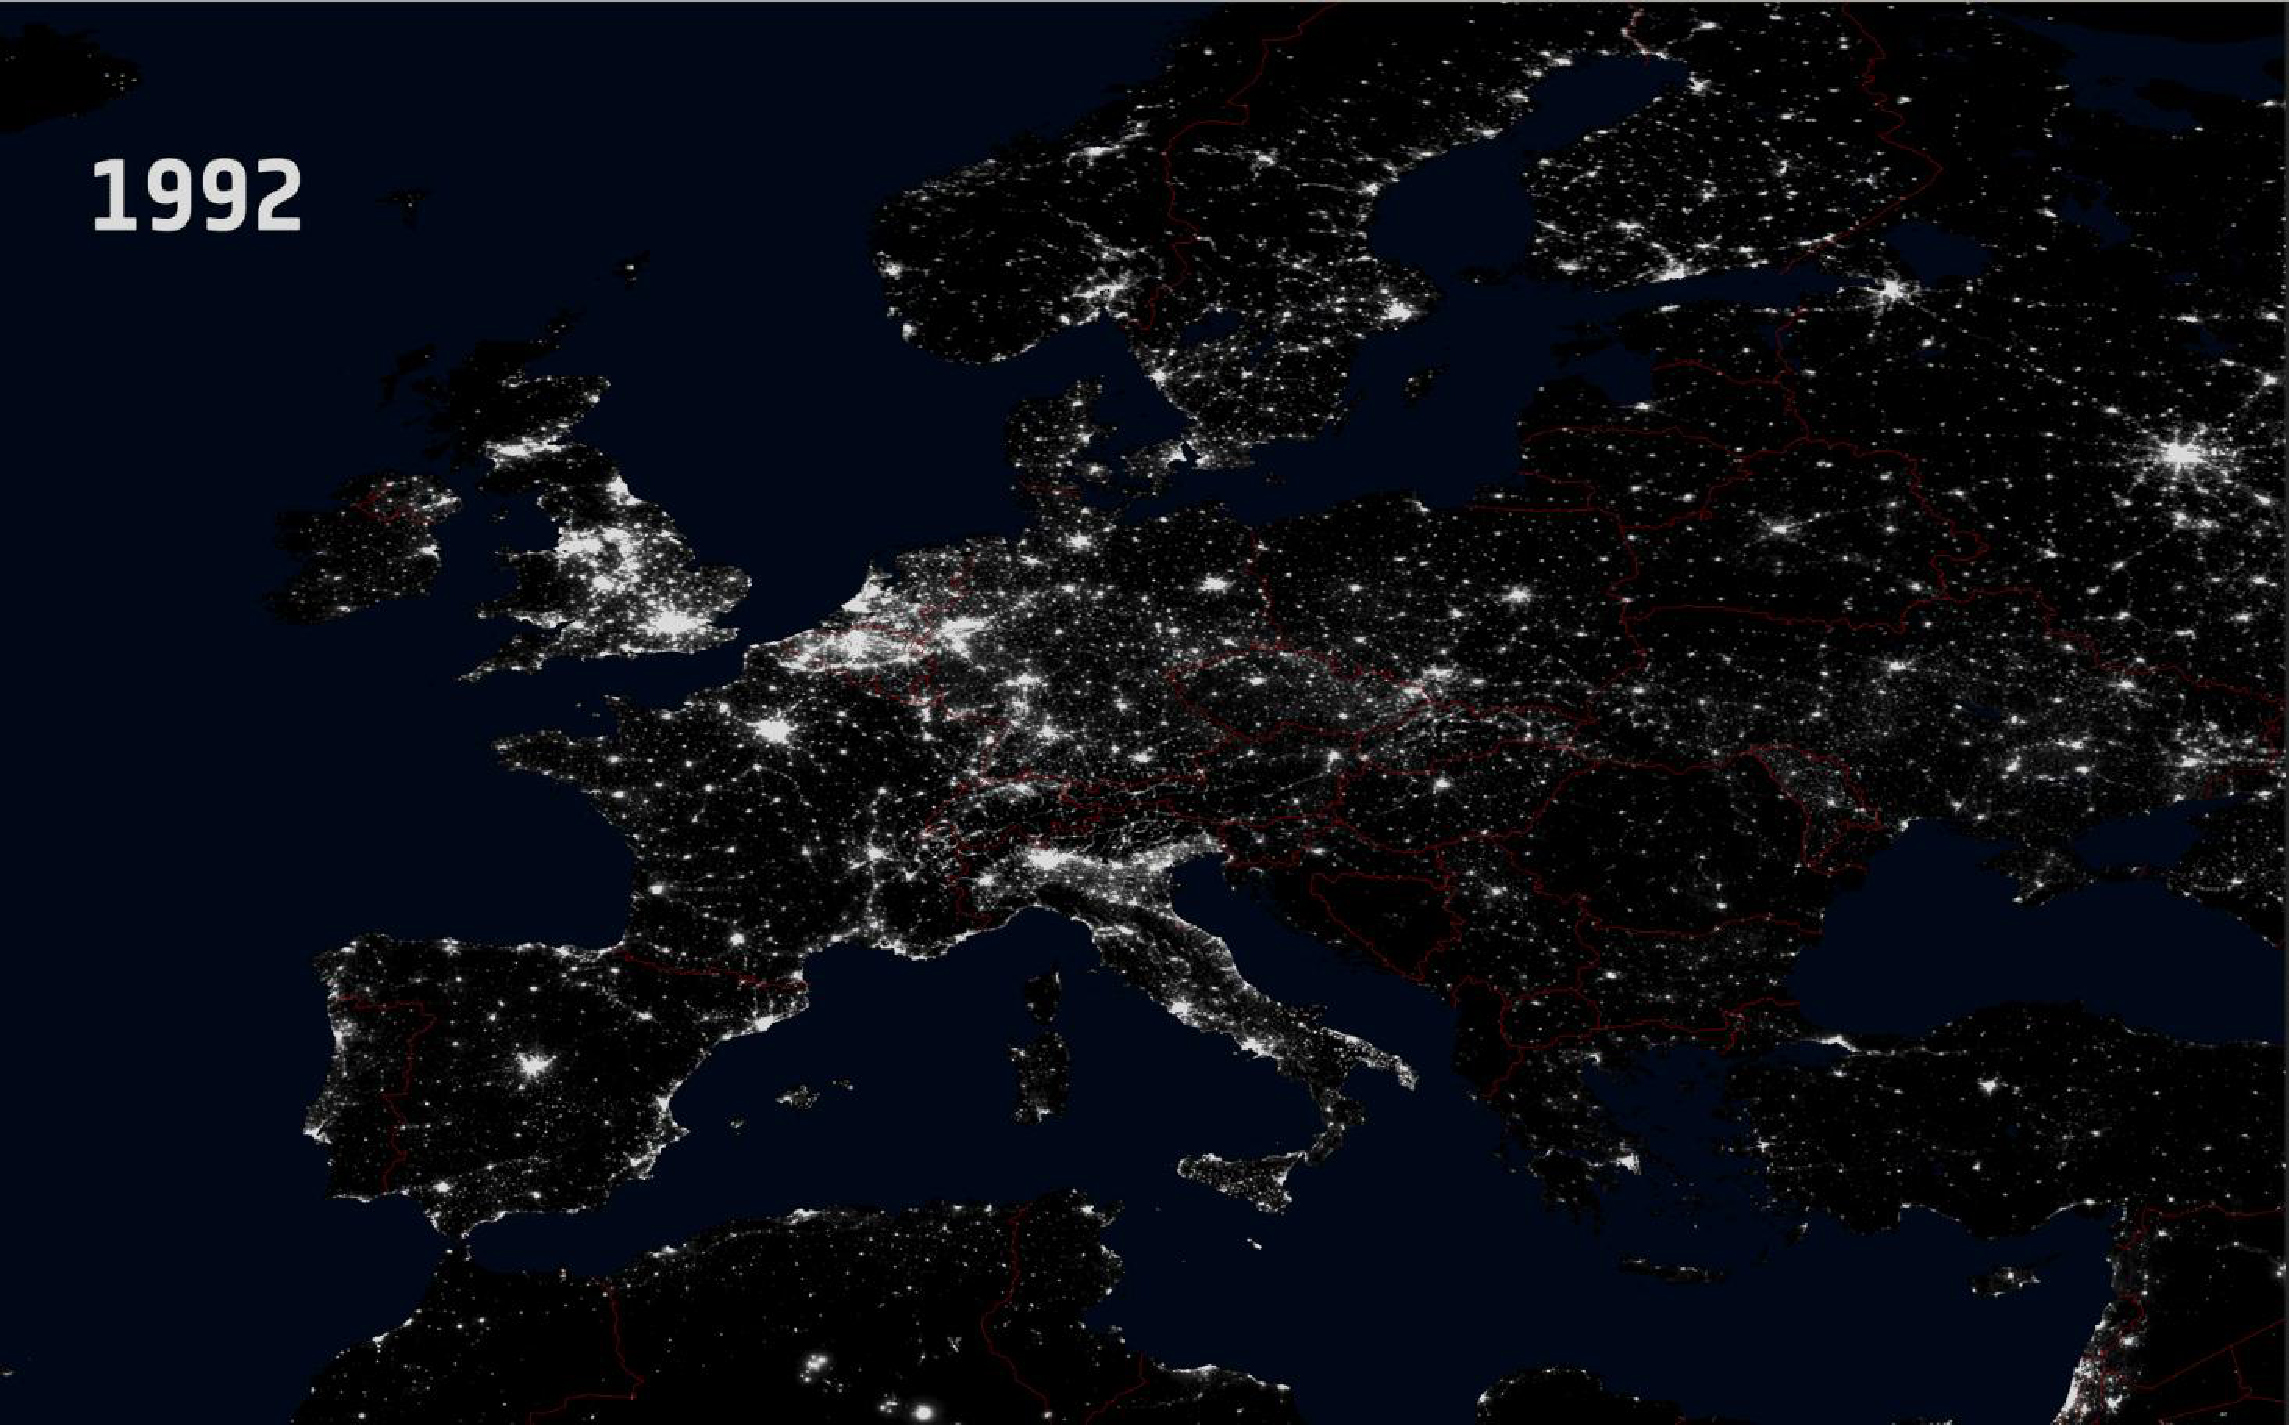 5. Évolution de la pollution lumineuse en Europe et en région